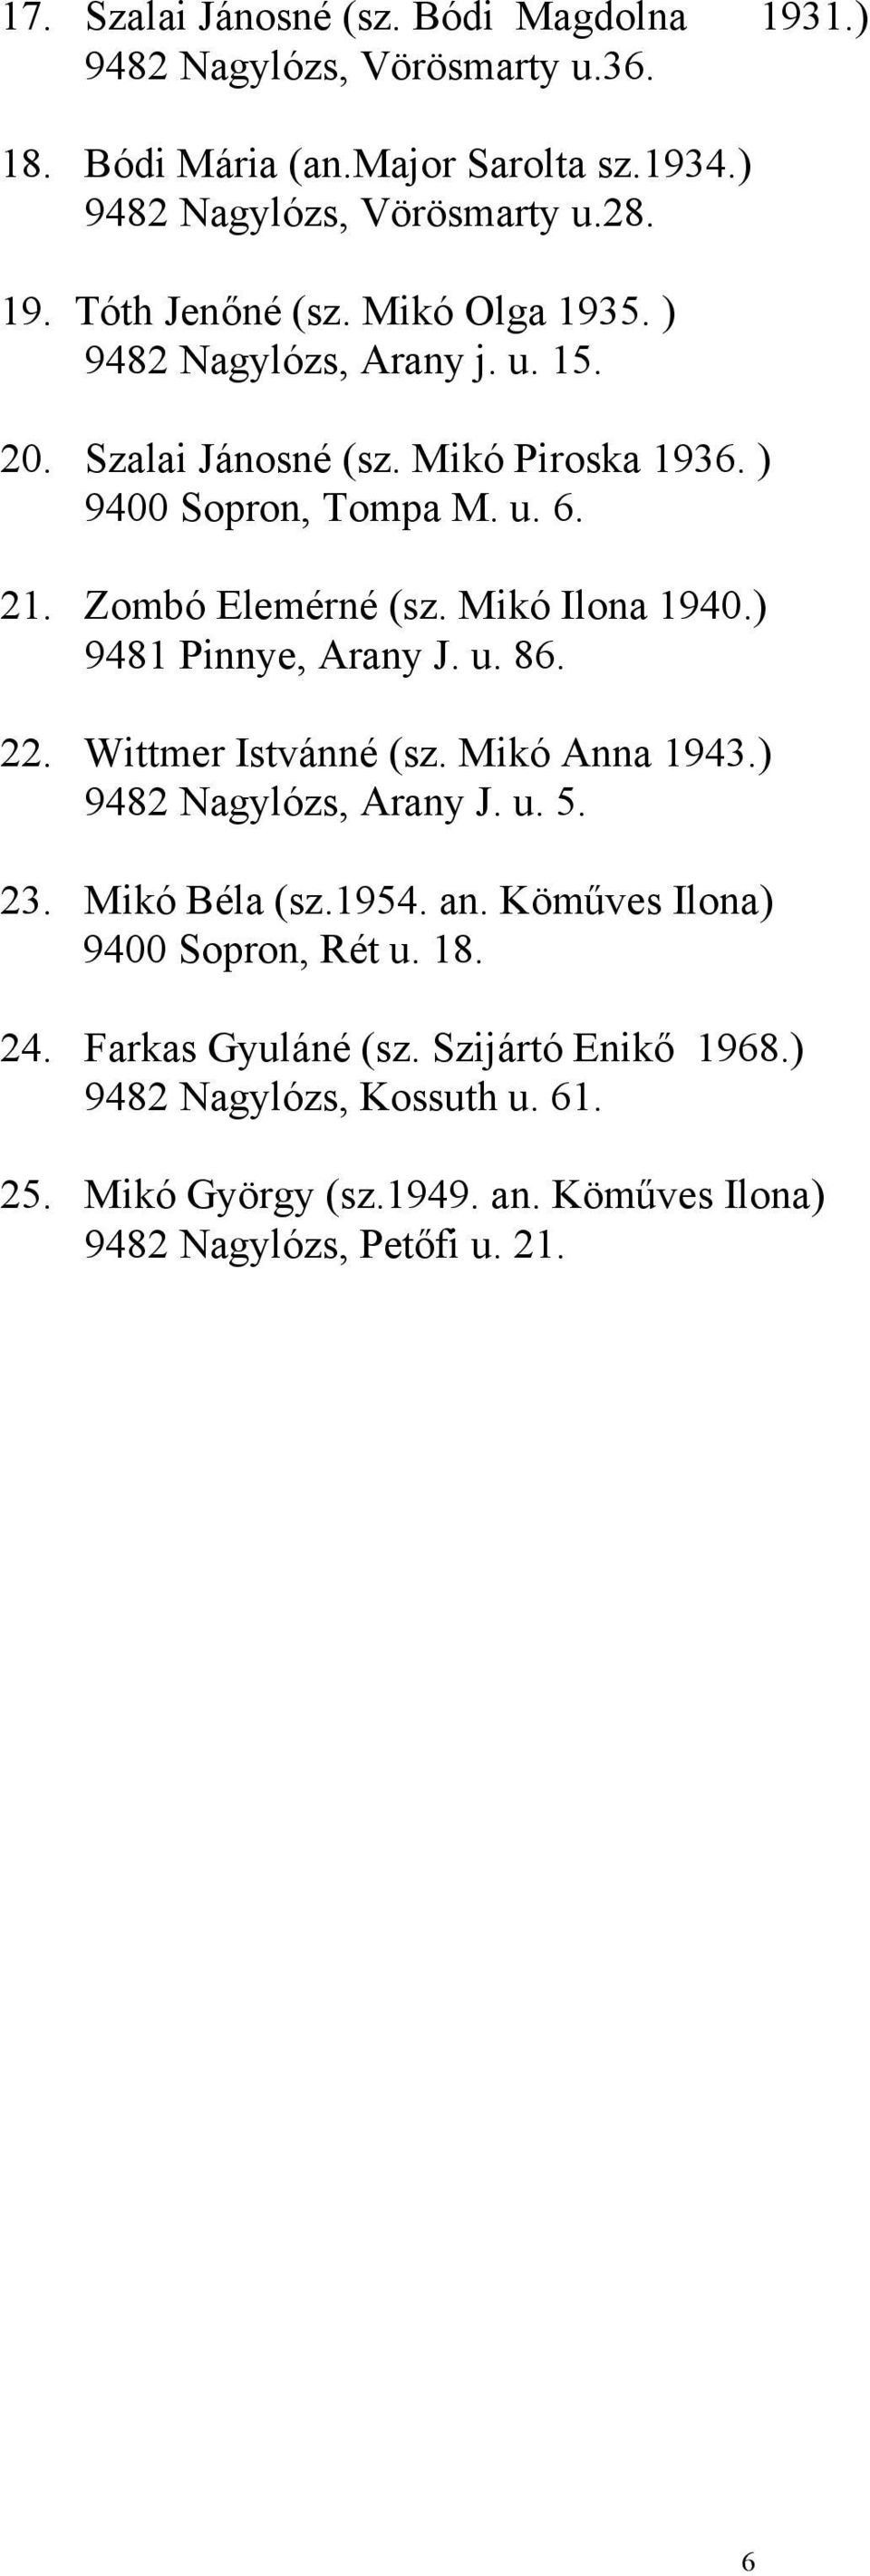 ) 9481 Pinnye, Arany J. u. 86. 22. Wittmer Istvánné (sz. Mikó Anna 1943.) 9482 Nagylózs, Arany J. u. 5. 23. Mikó Béla (sz.1954. an.